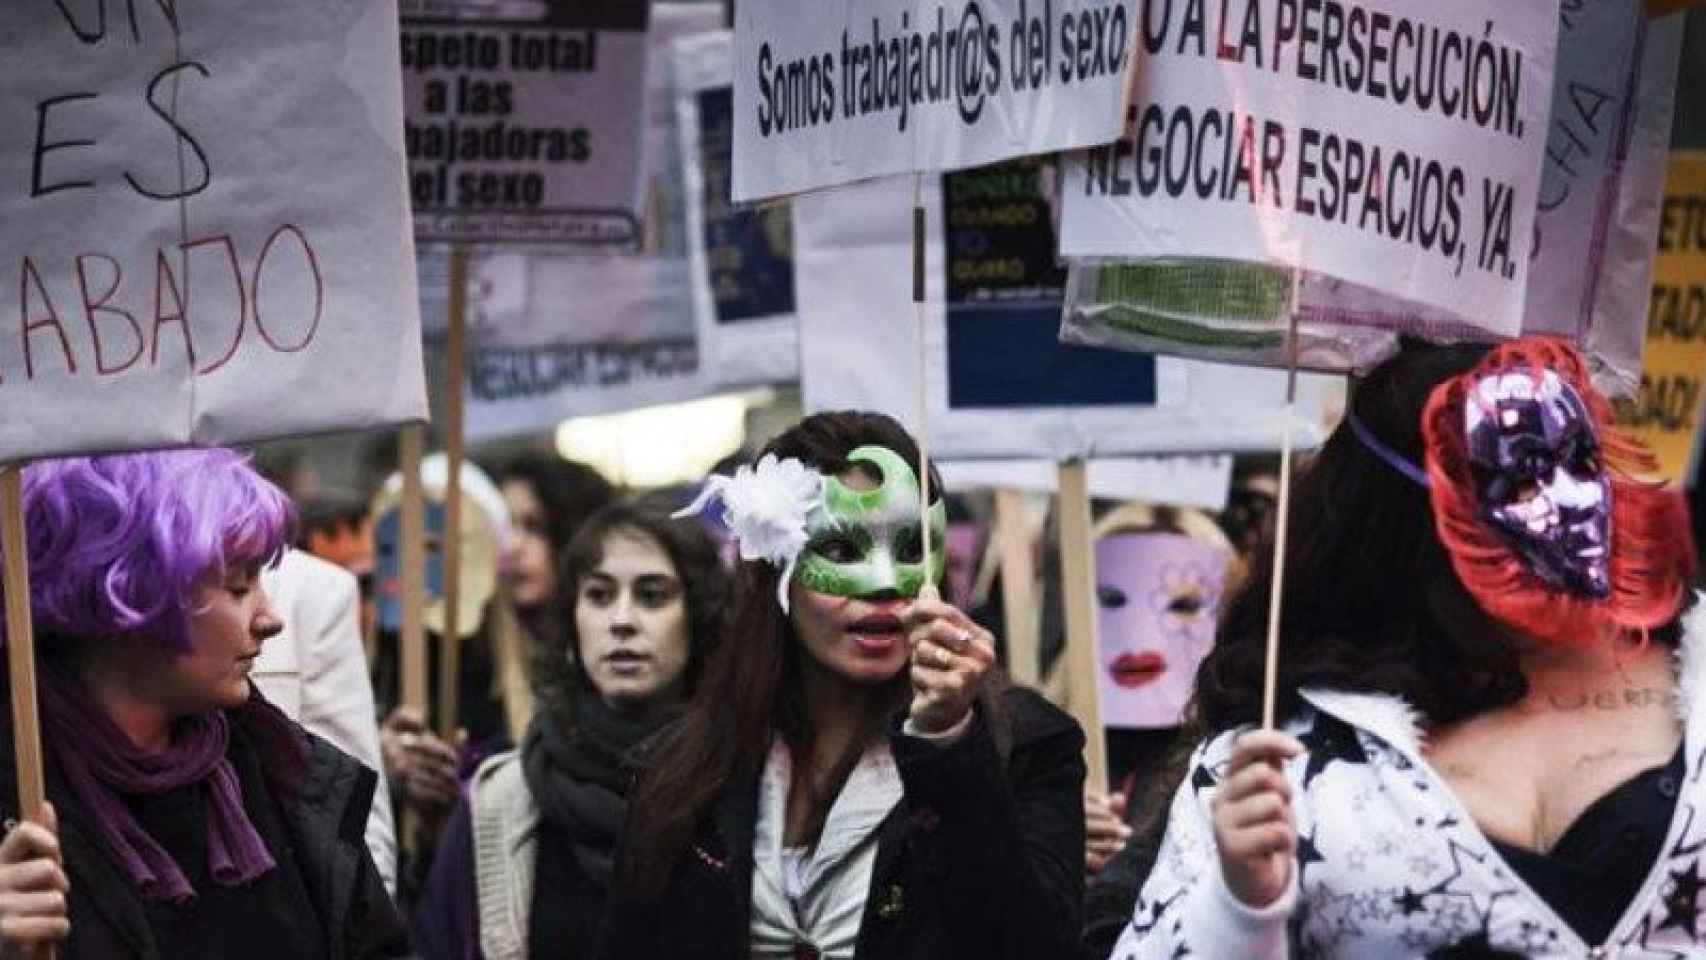 Manifestación a favor de regular la prostitución, en una imagen de archivo / EFE